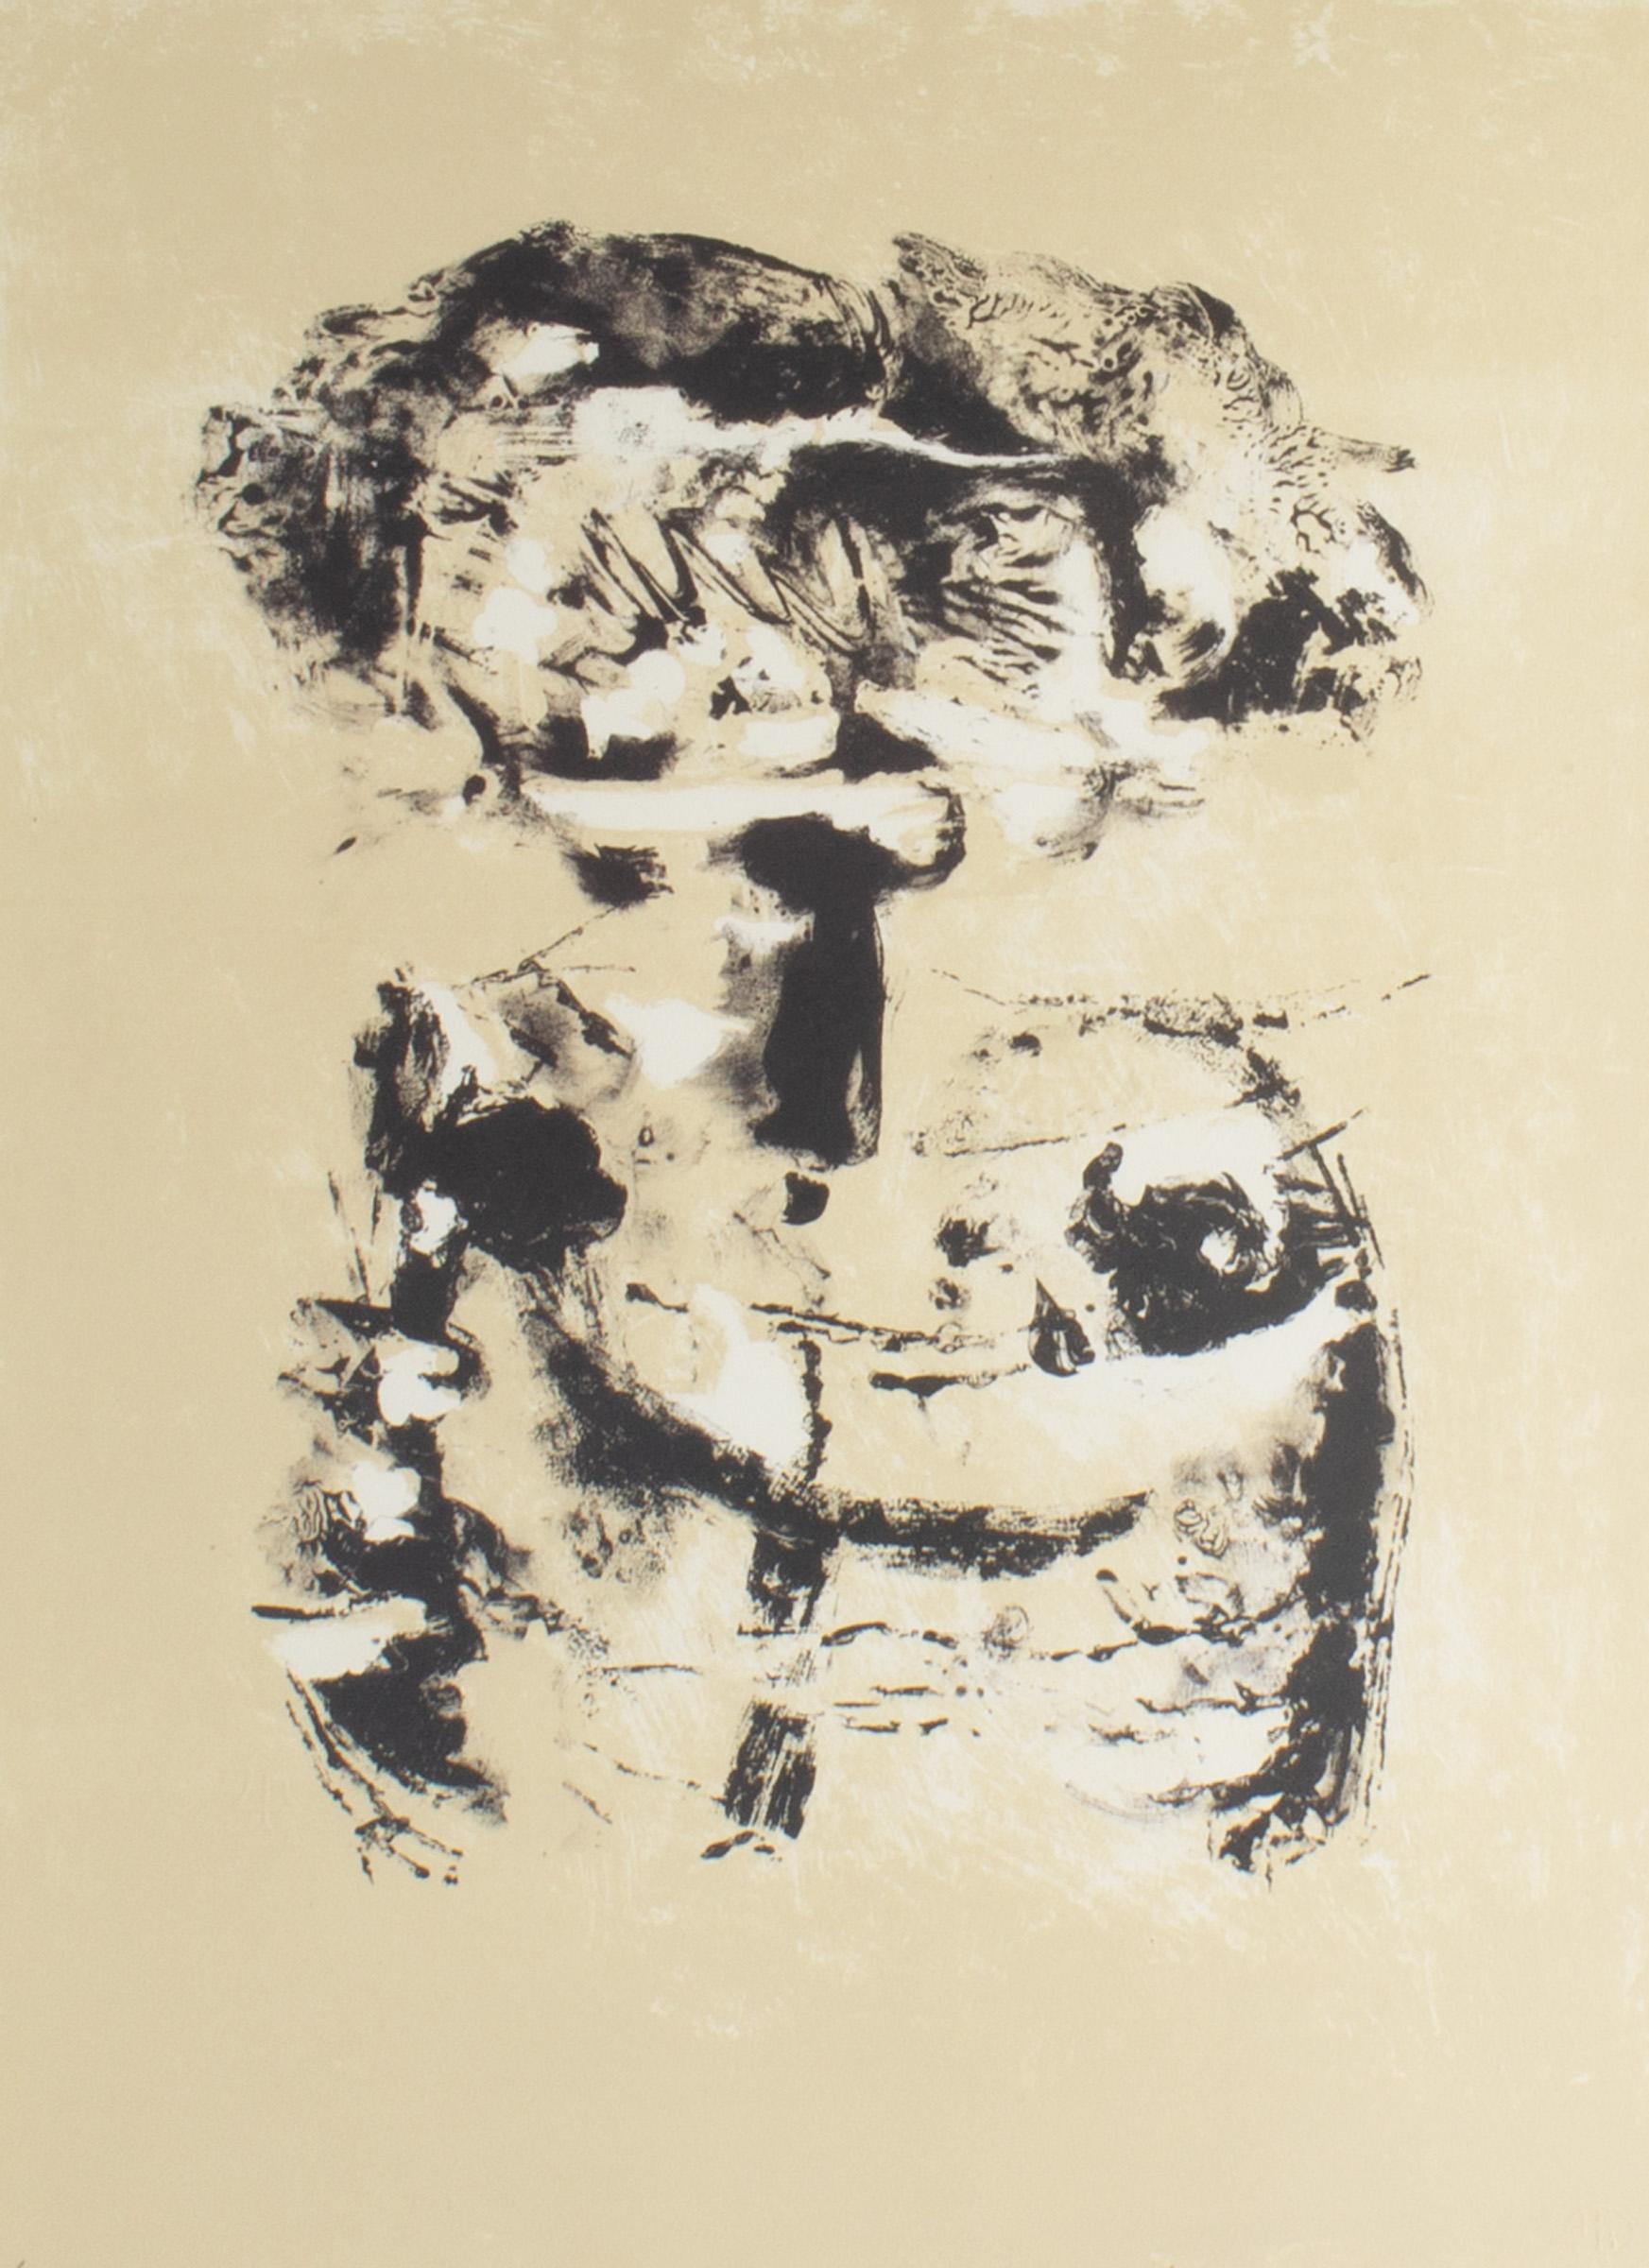 Eine Lithografie des russisch-amerikanischen Künstlers Adja Yunkers (1900-1983) aus den 1960er Jahren mit dem Titel Salt IV in limitierter Auflage. Dieses abstrakte Werk zeigt eine schwarz-weiße Form vor einem hellbraunen Hintergrund. Der Druck ist